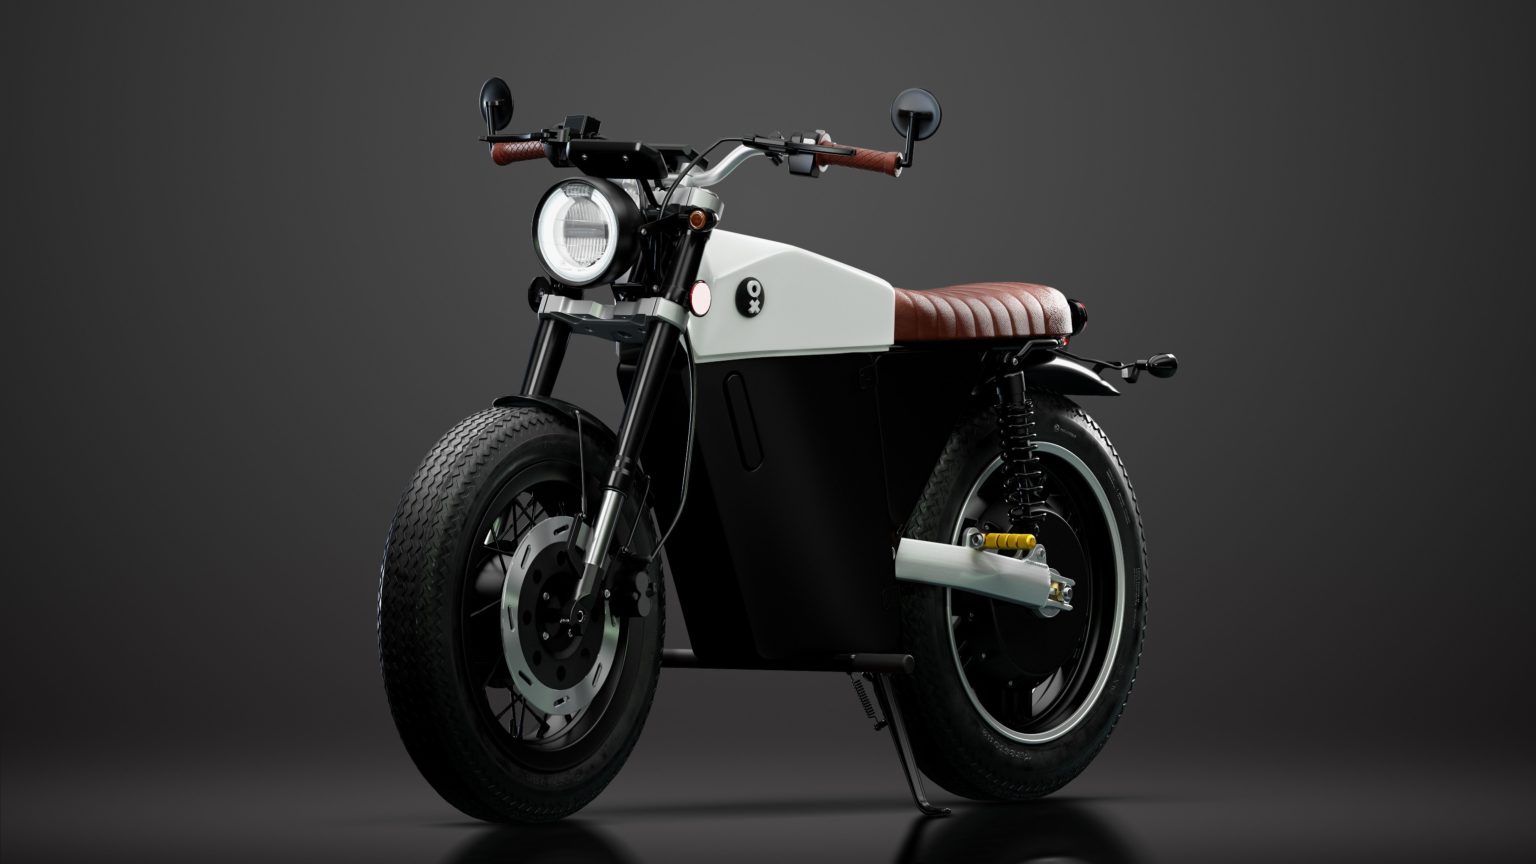 Dossier Moto Journal : tout savoir sur la moto électrique